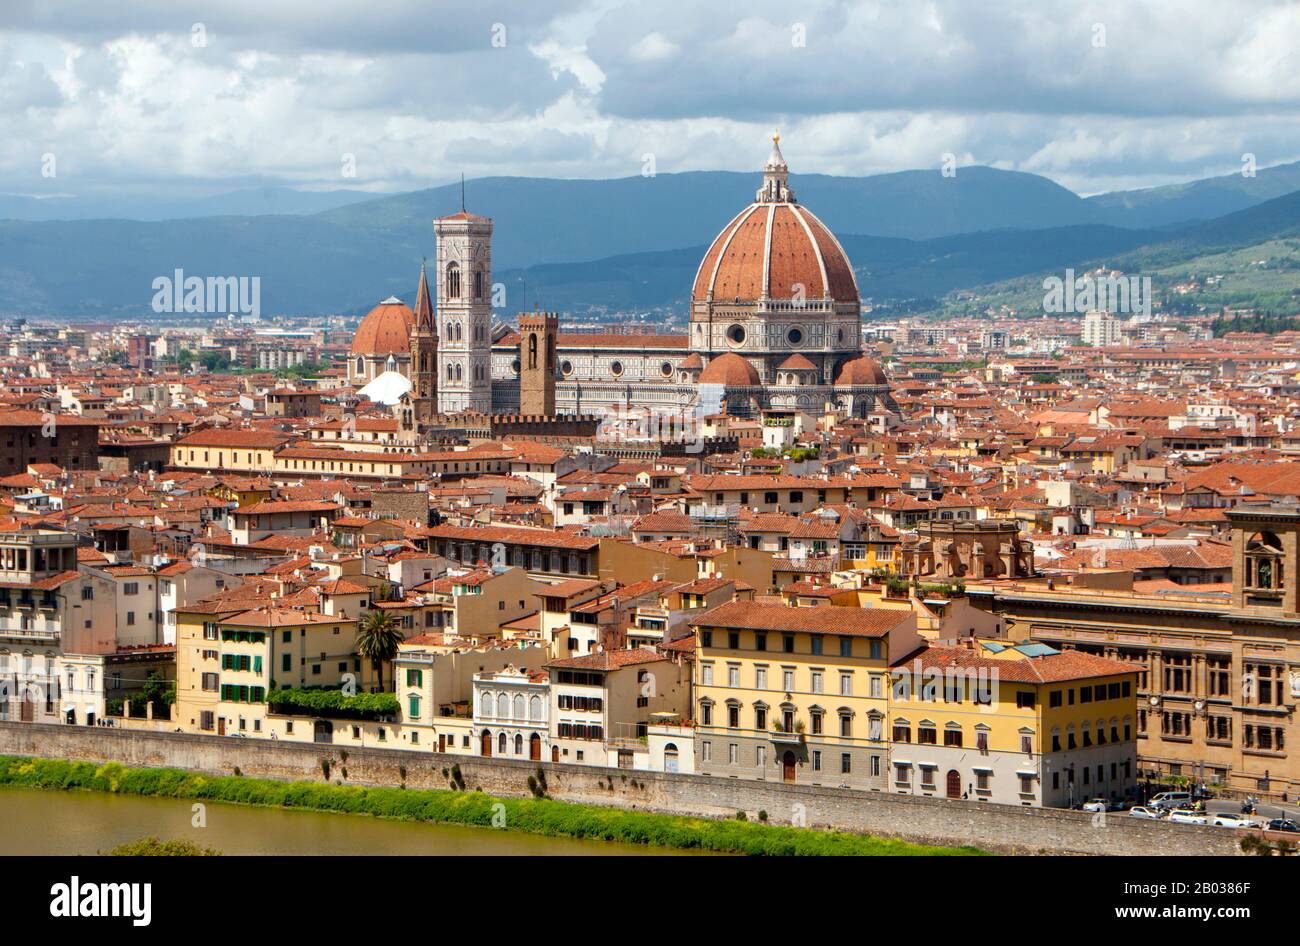 Firenze ou Florence est la capitale de la région italienne de la Toscane.  C'était un centre du commerce et de la finance médiévaux européens et une  des villes les plus riches de